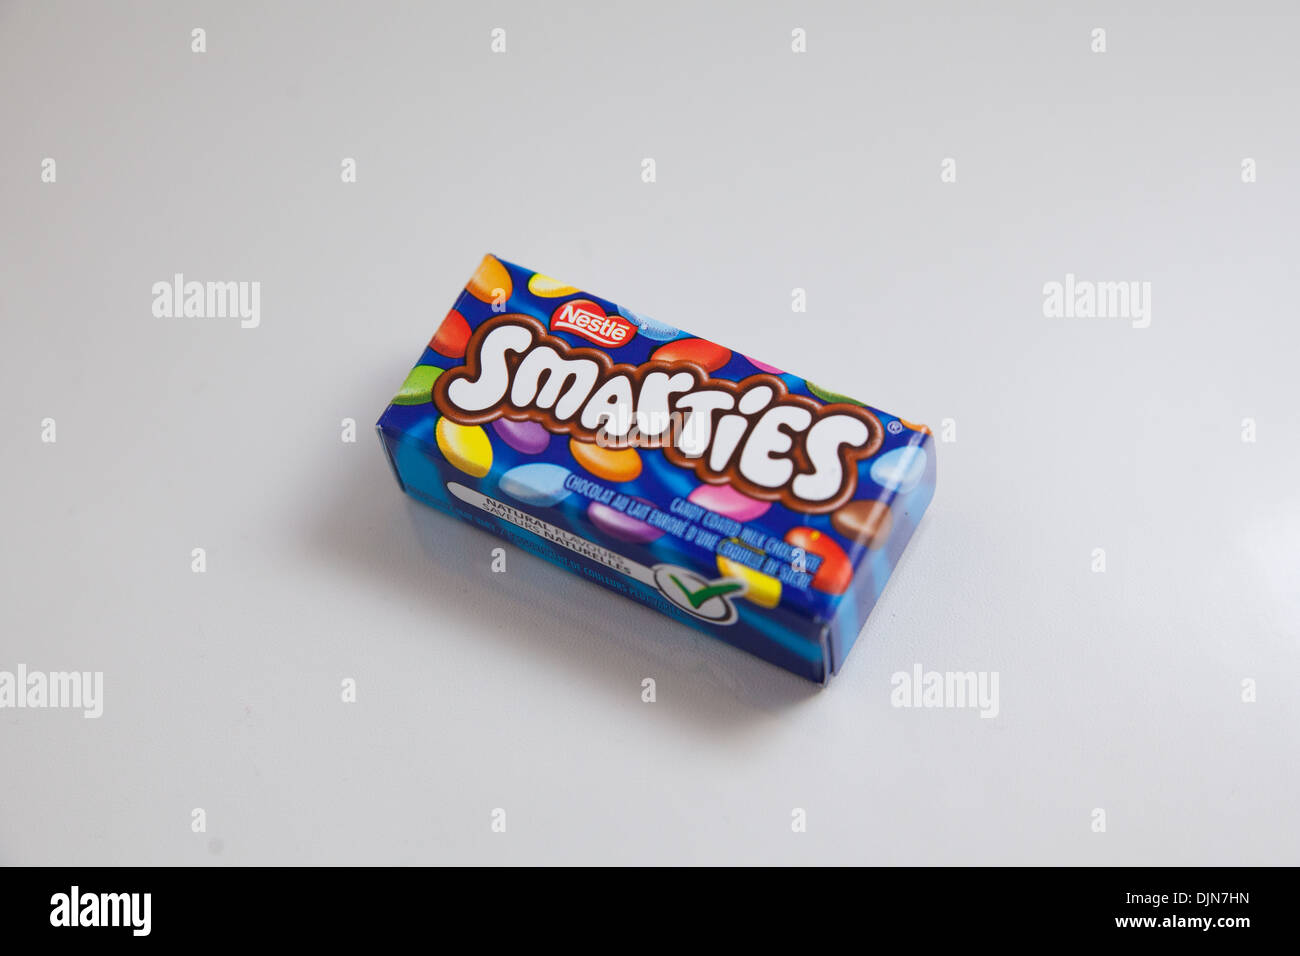 Mini smarties immagini e fotografie stock ad alta risoluzione - Alamy